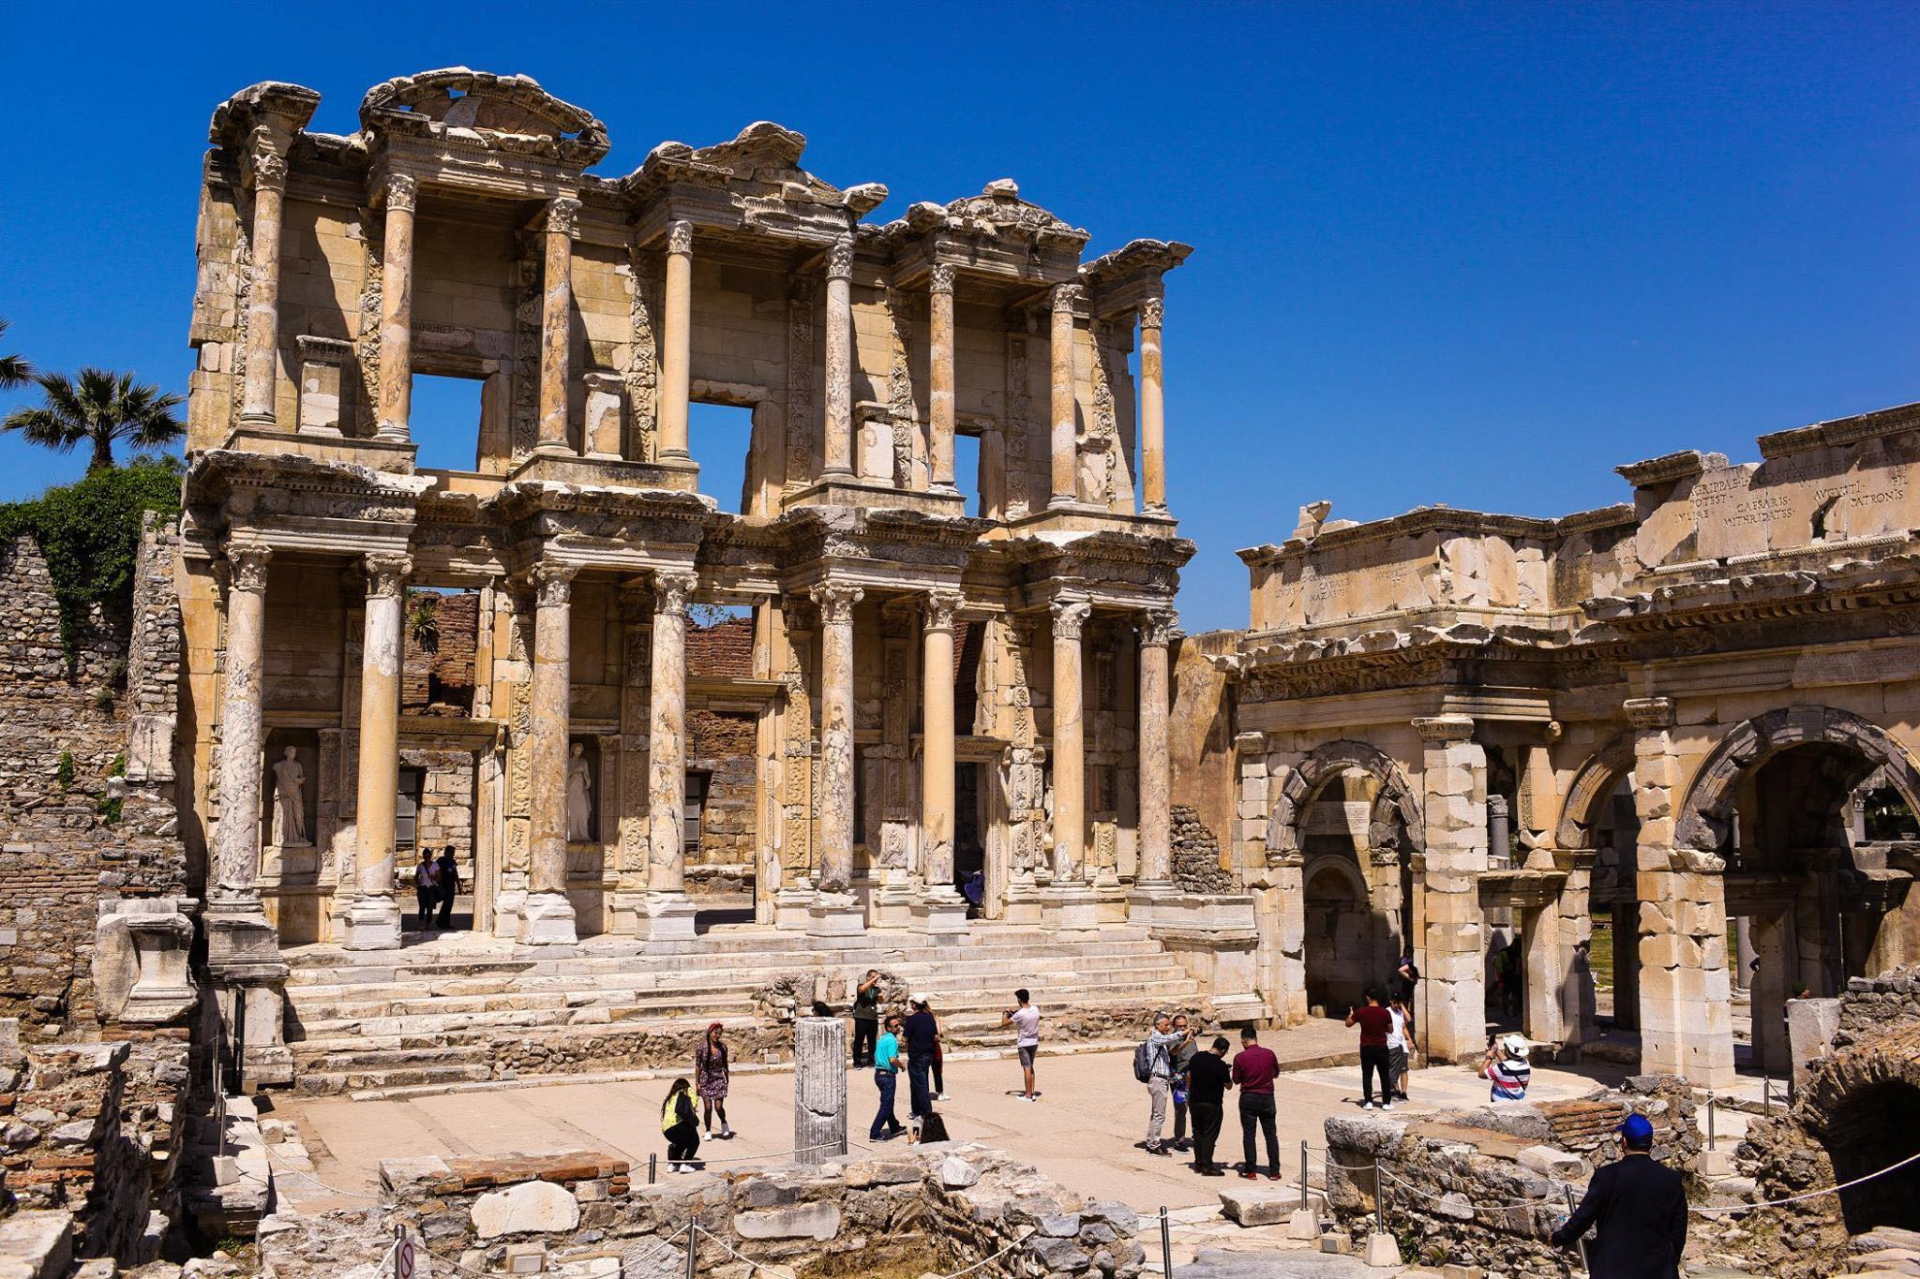 Thư viện Celsus nằm trong khu di tích thành phố cổ Ephesus, một thành phố nổi tiếng vùng Địa Trung Hải của Hy Lạp cổ đại, thuộc tỉnh Izmir - Thổ Nhĩ Kỳ ngày nay.